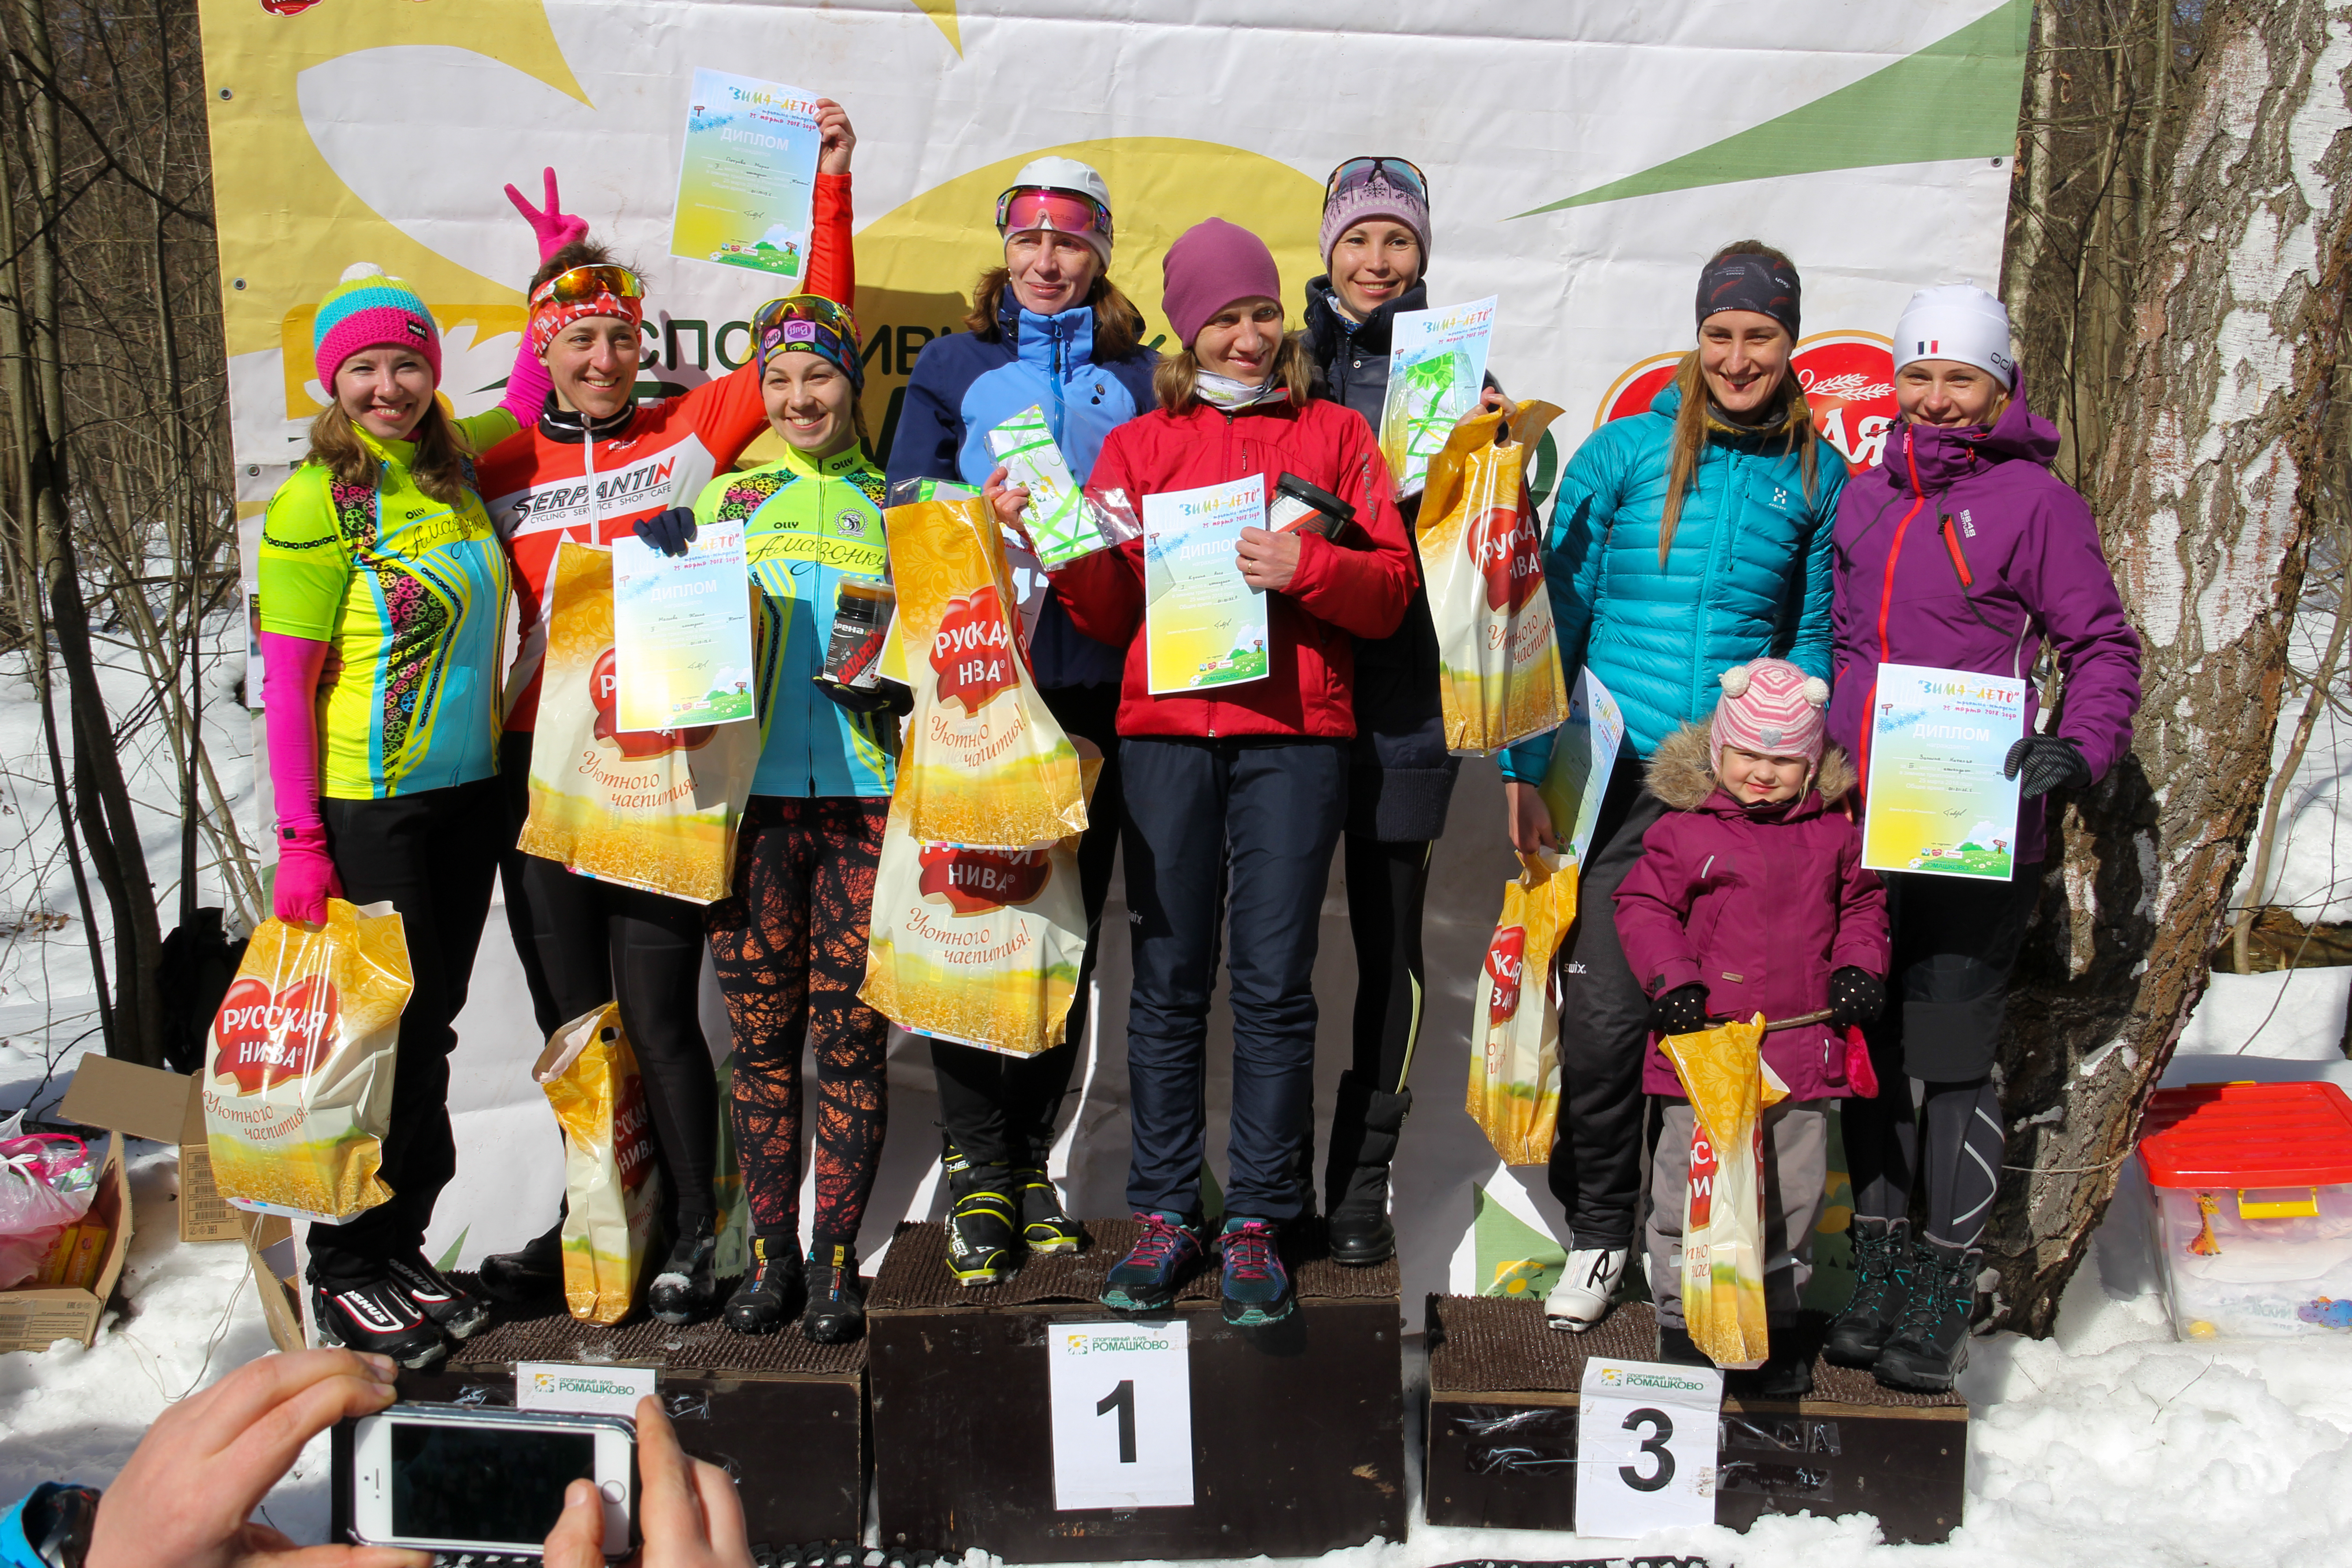 Триатлон-эстафета "Зима-Лето" 25.03.2018 в Ромашково (бег, велосипед, лыжи). Женская команда STRELA - 1 место!